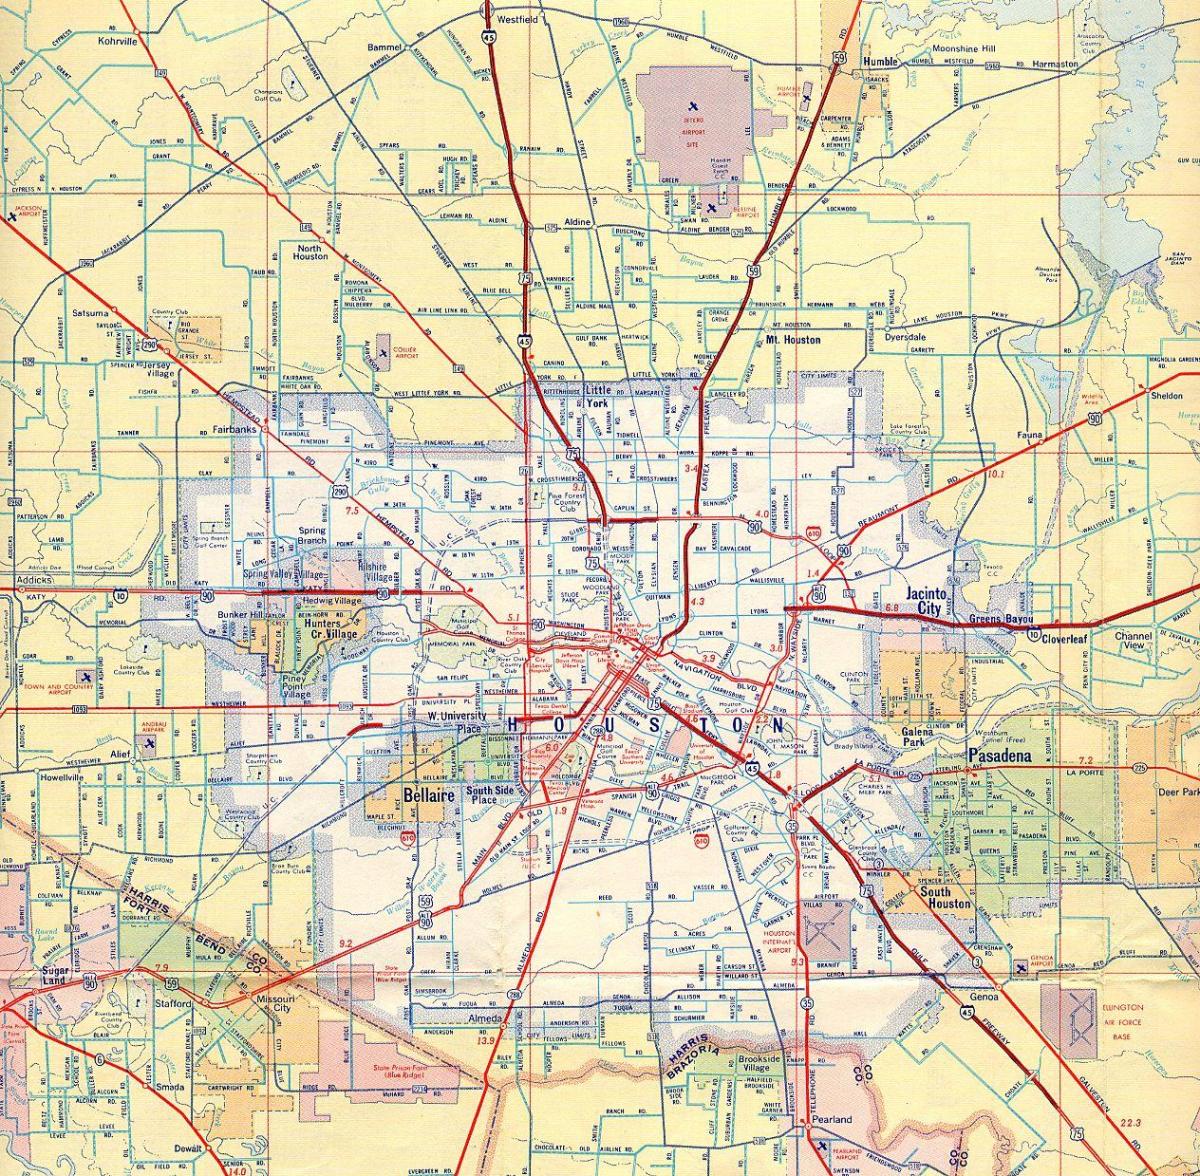 χάρτης του Χιούστον αυτοκινητόδρομους